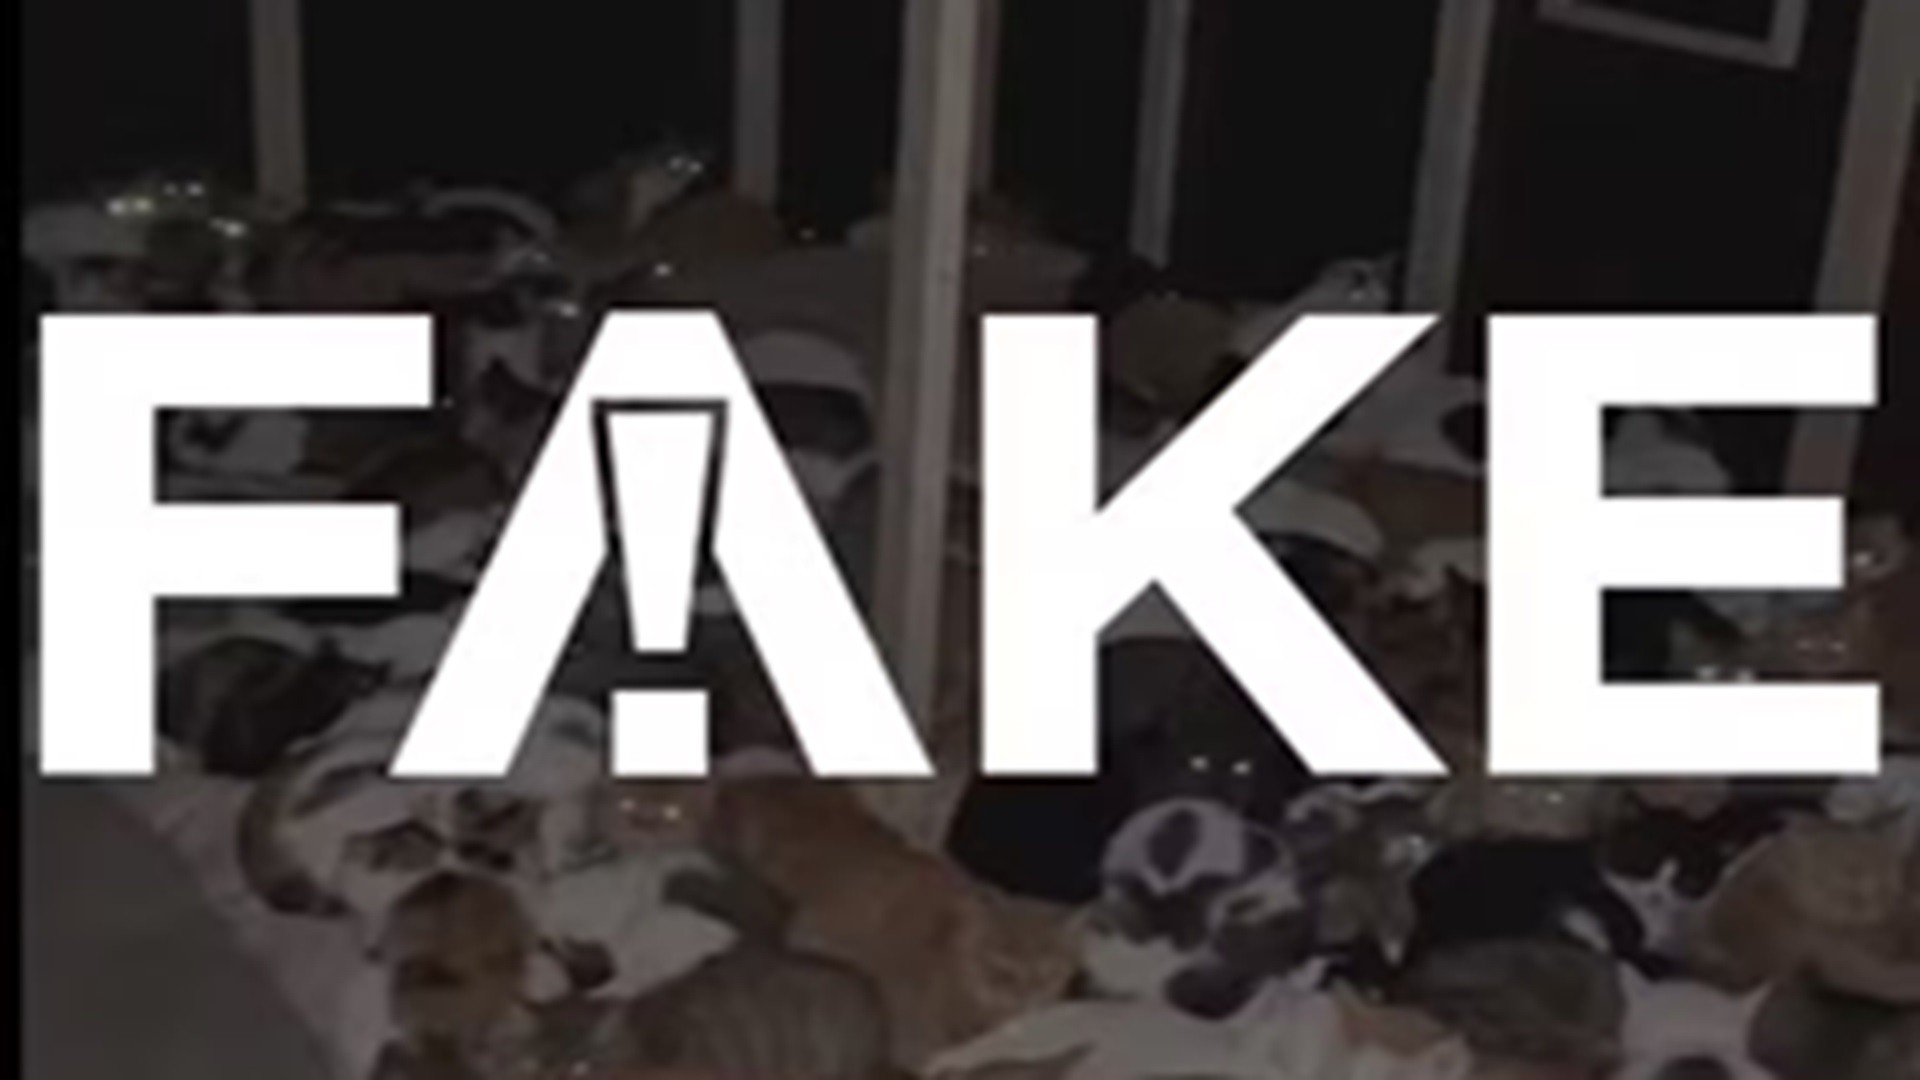 É #FAKE vídeo que mostra abrigo de gatos resgatados no Rio Grande do Sul 